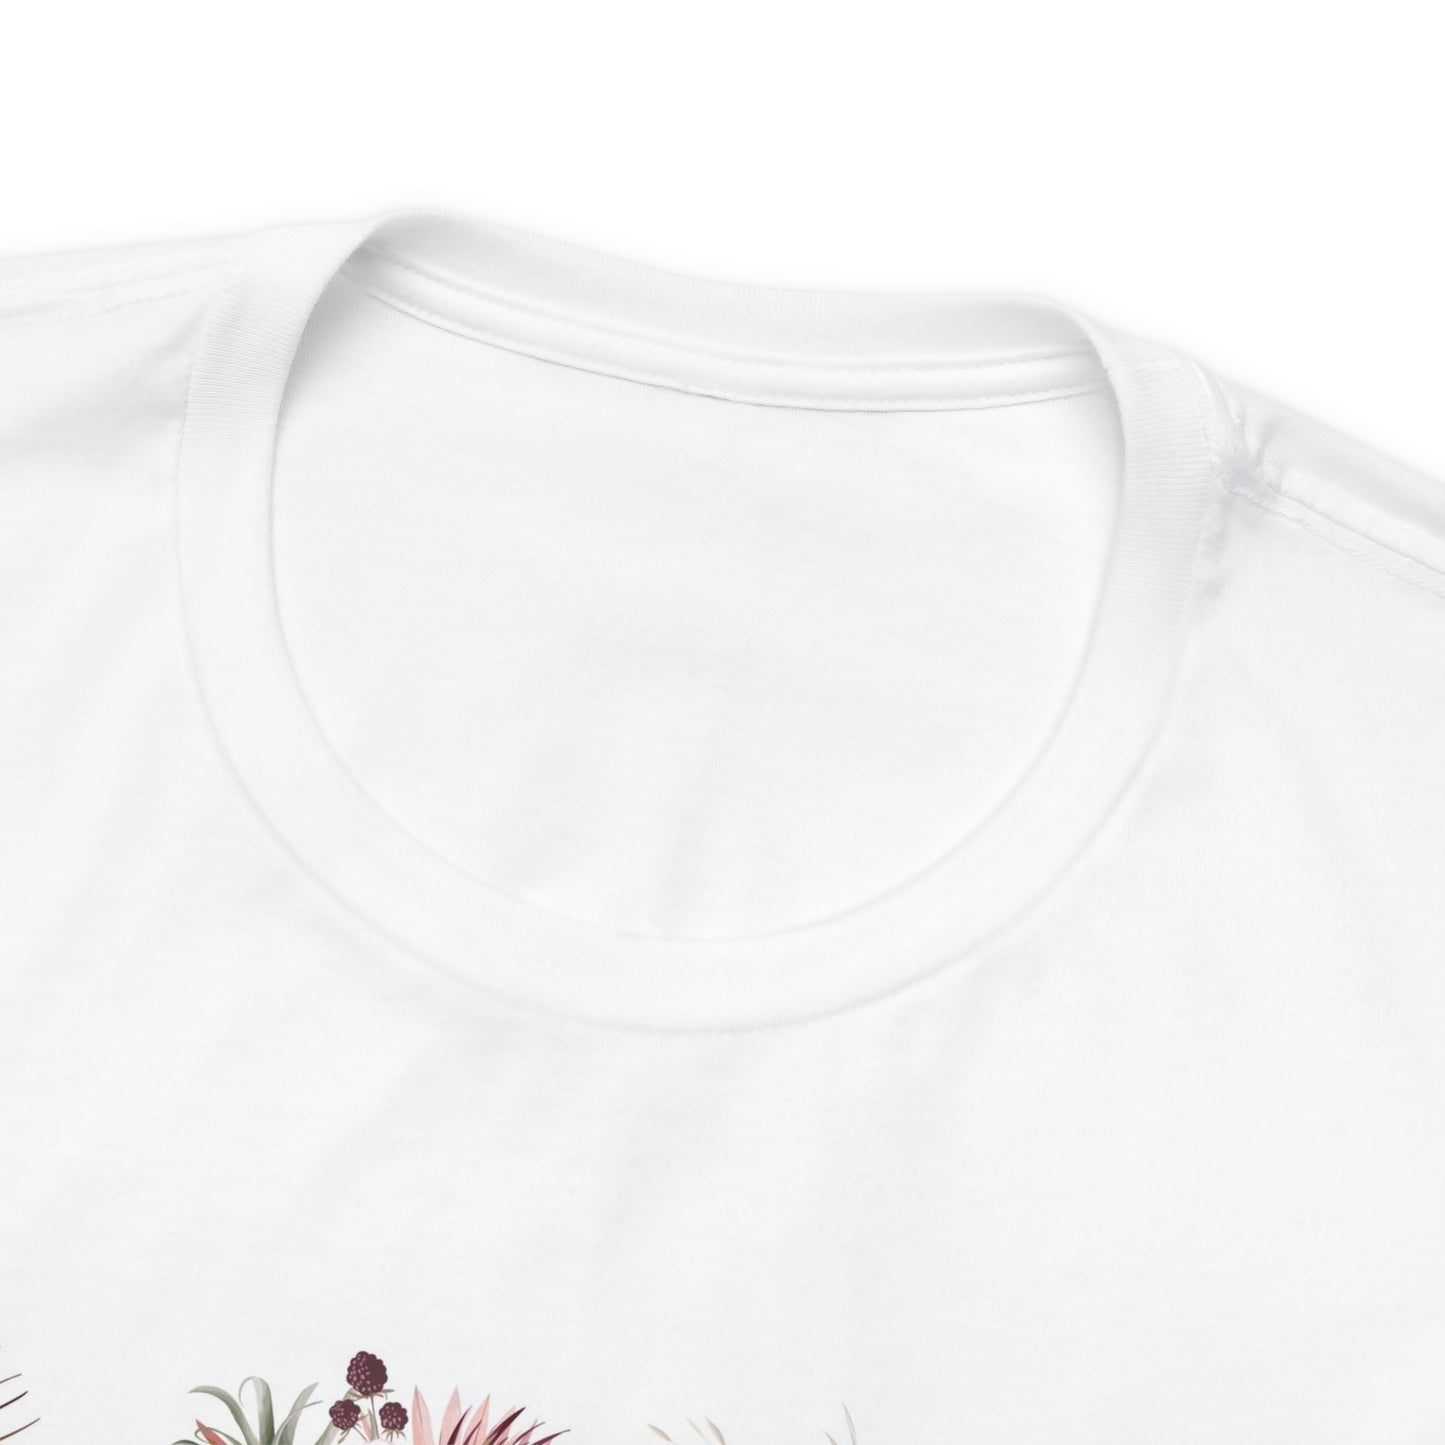 Unisex Boho Flower Design Tee - Comfortable & Stylish Short Sleeve Shirt